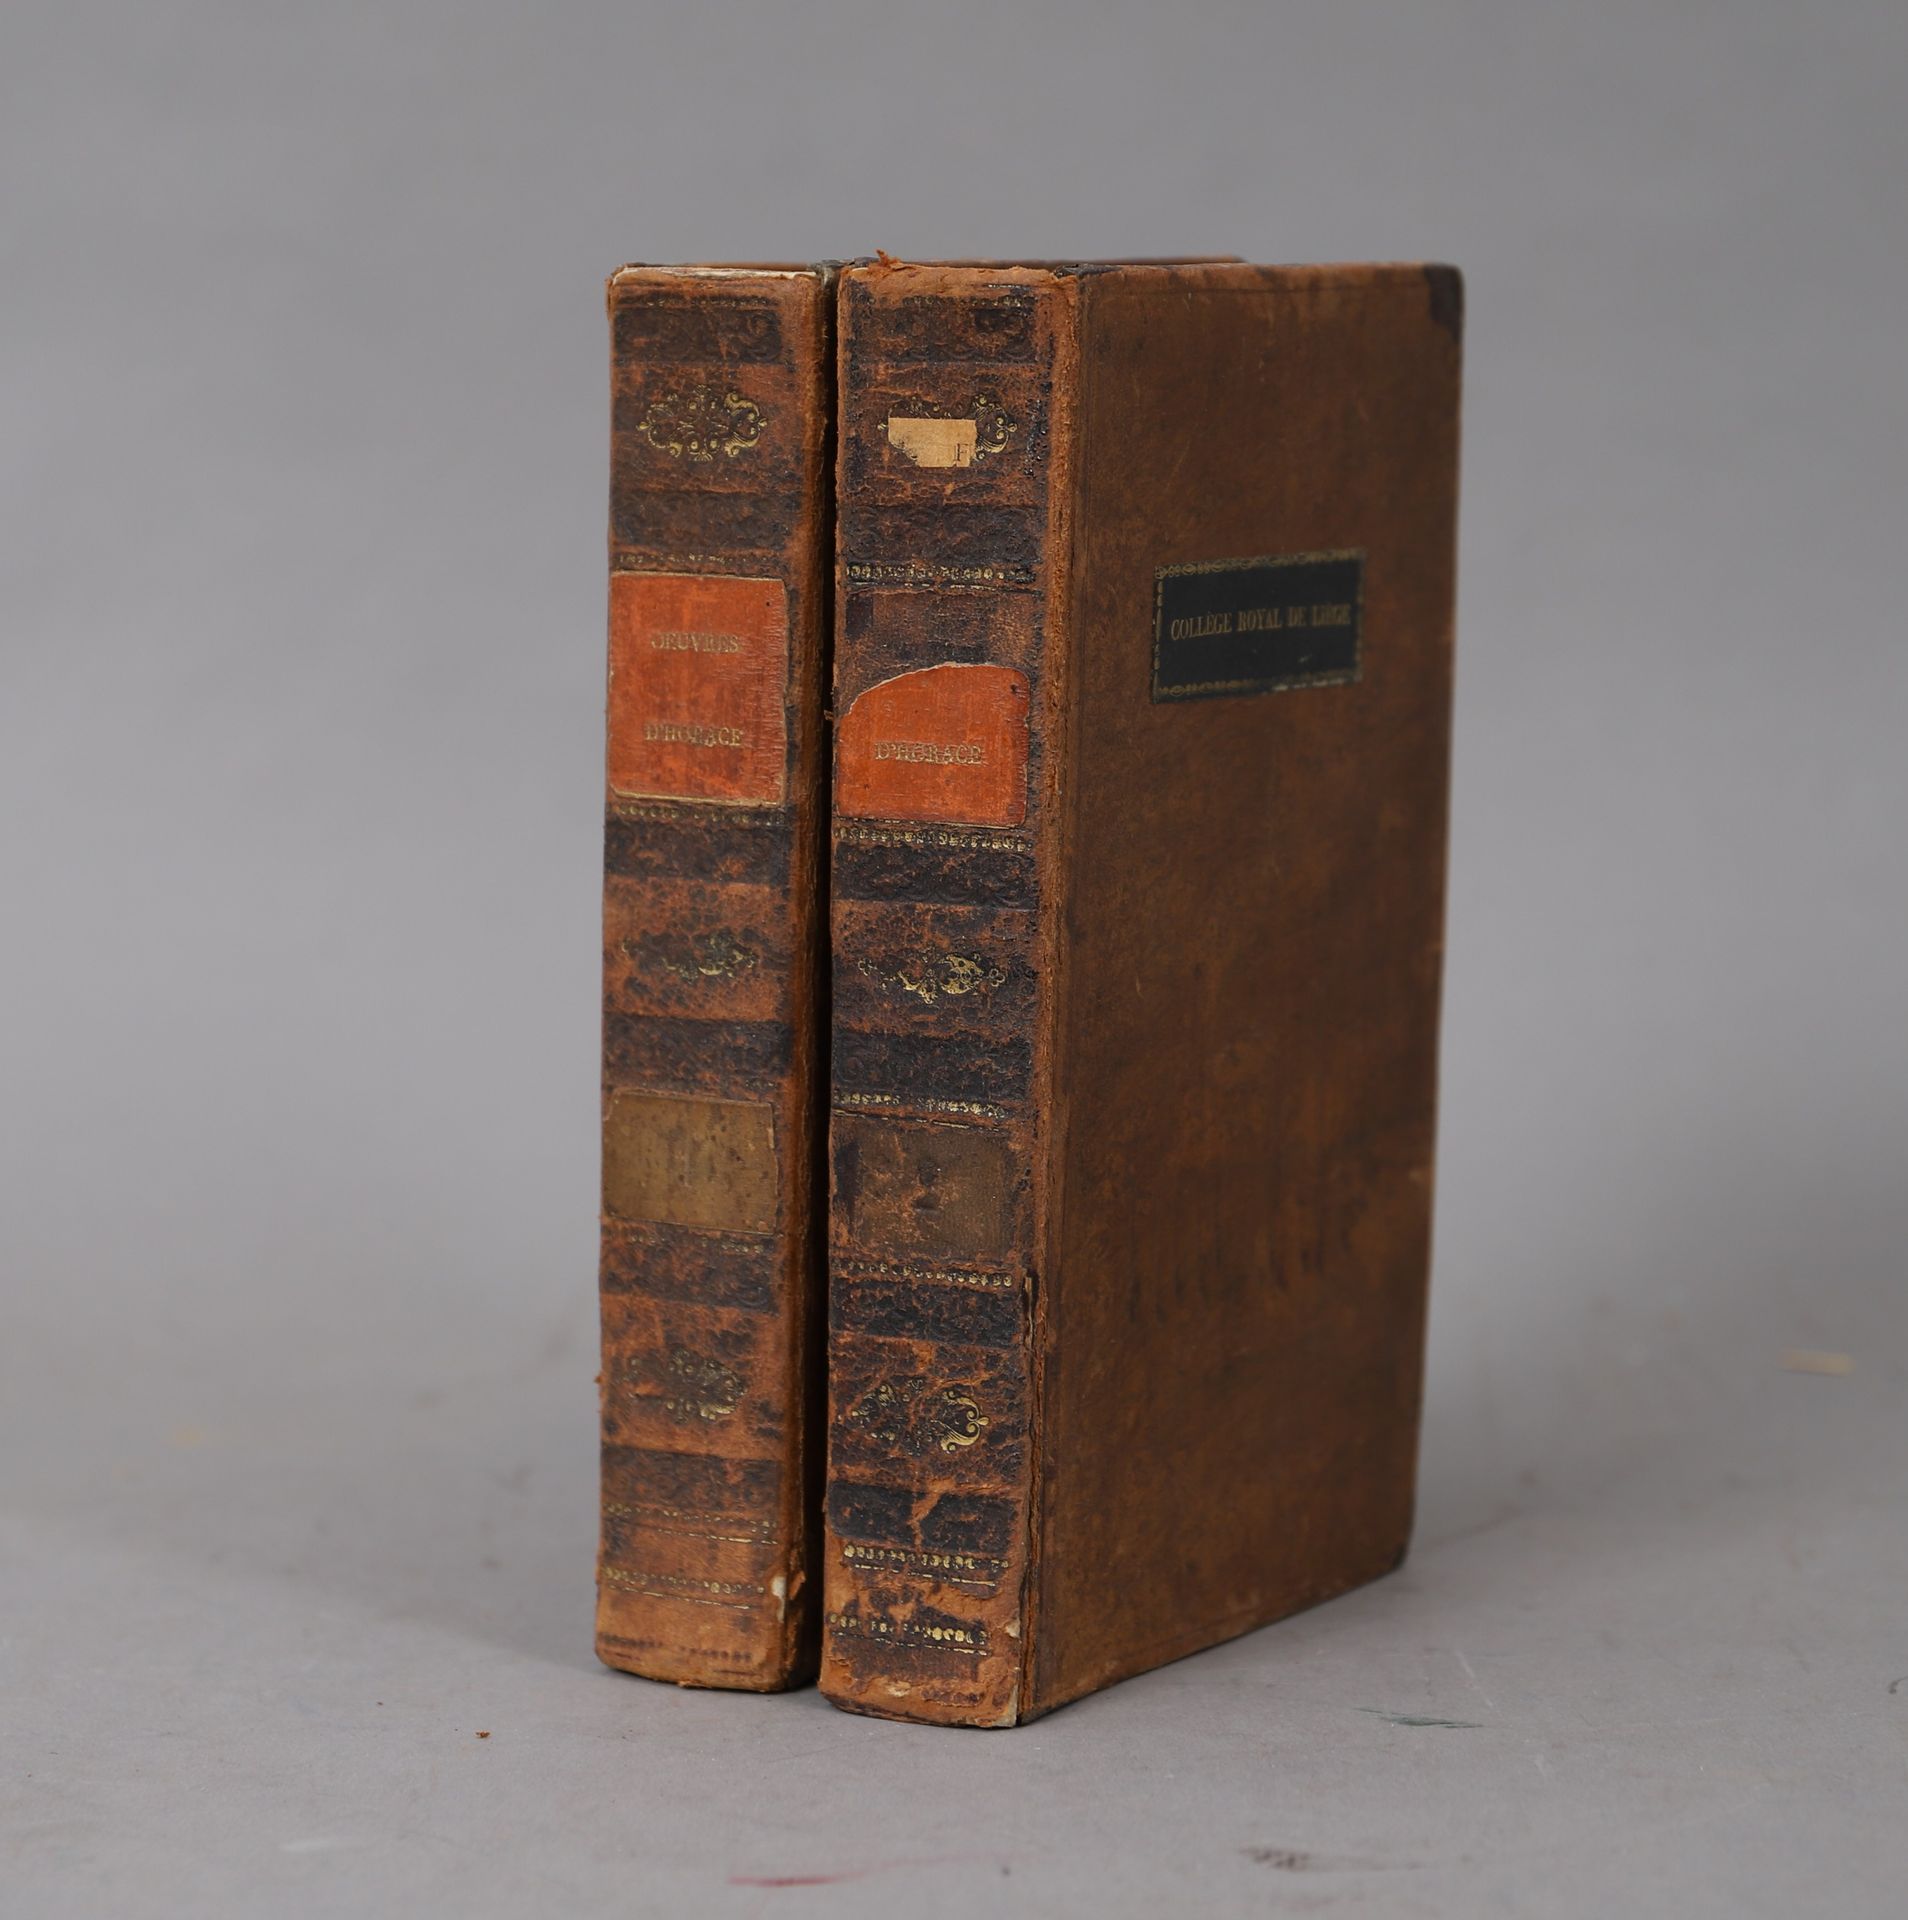 Null opere di Orazio

1823

2 volumi rilegati.